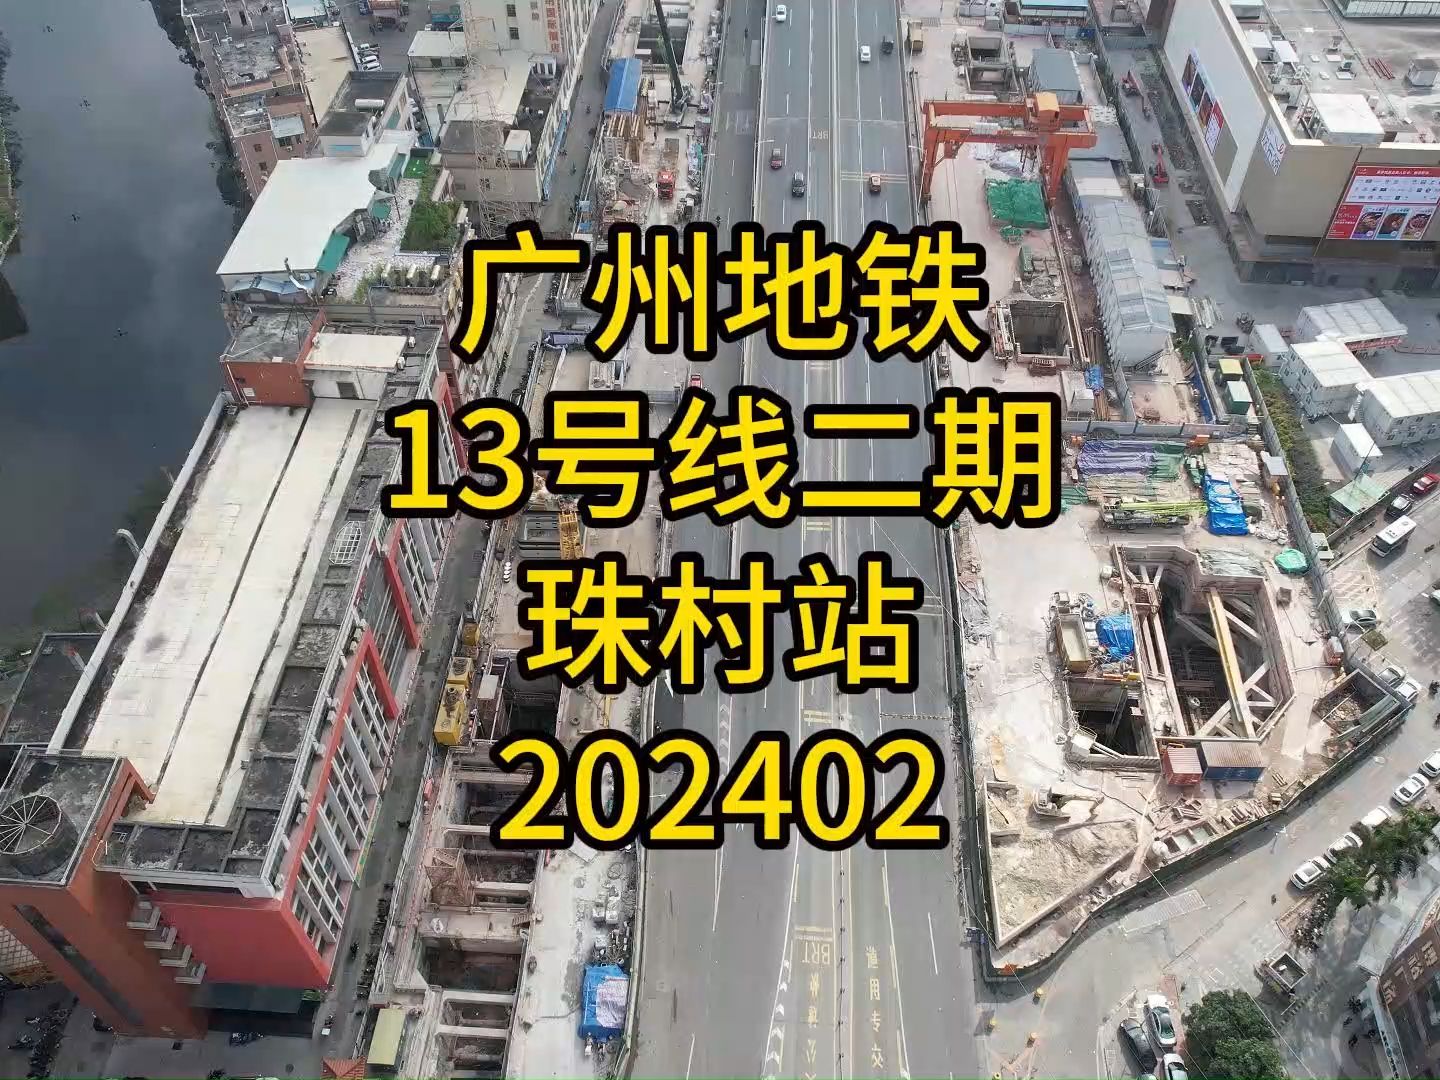 广州地铁在建13号线二期珠村站202402